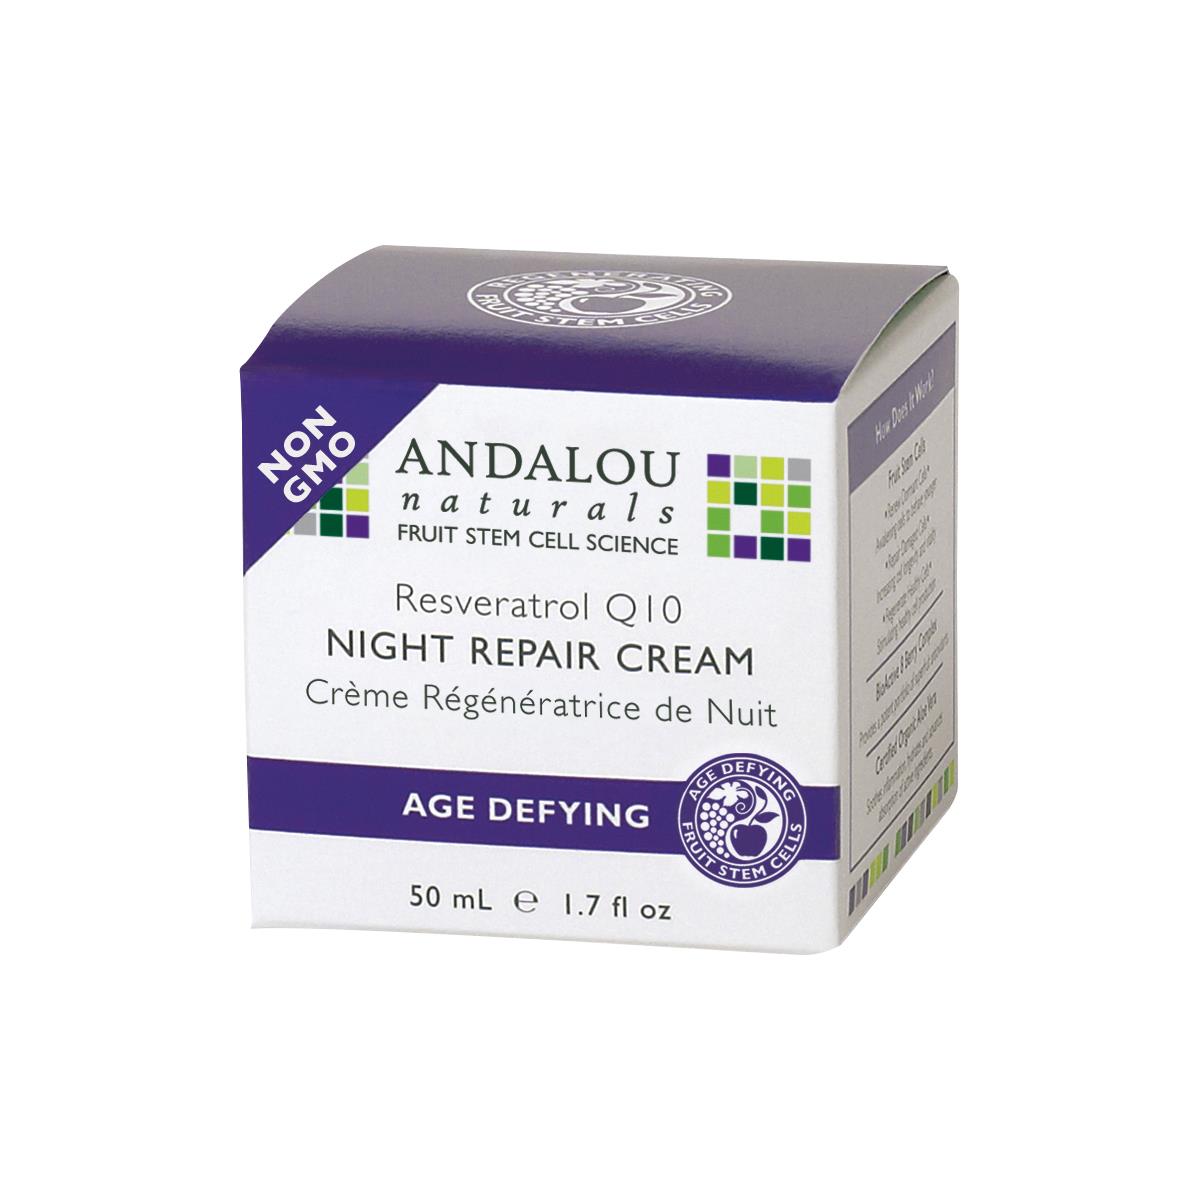 Andalou Naturals Night Repair Cream Age Defying - 50ml